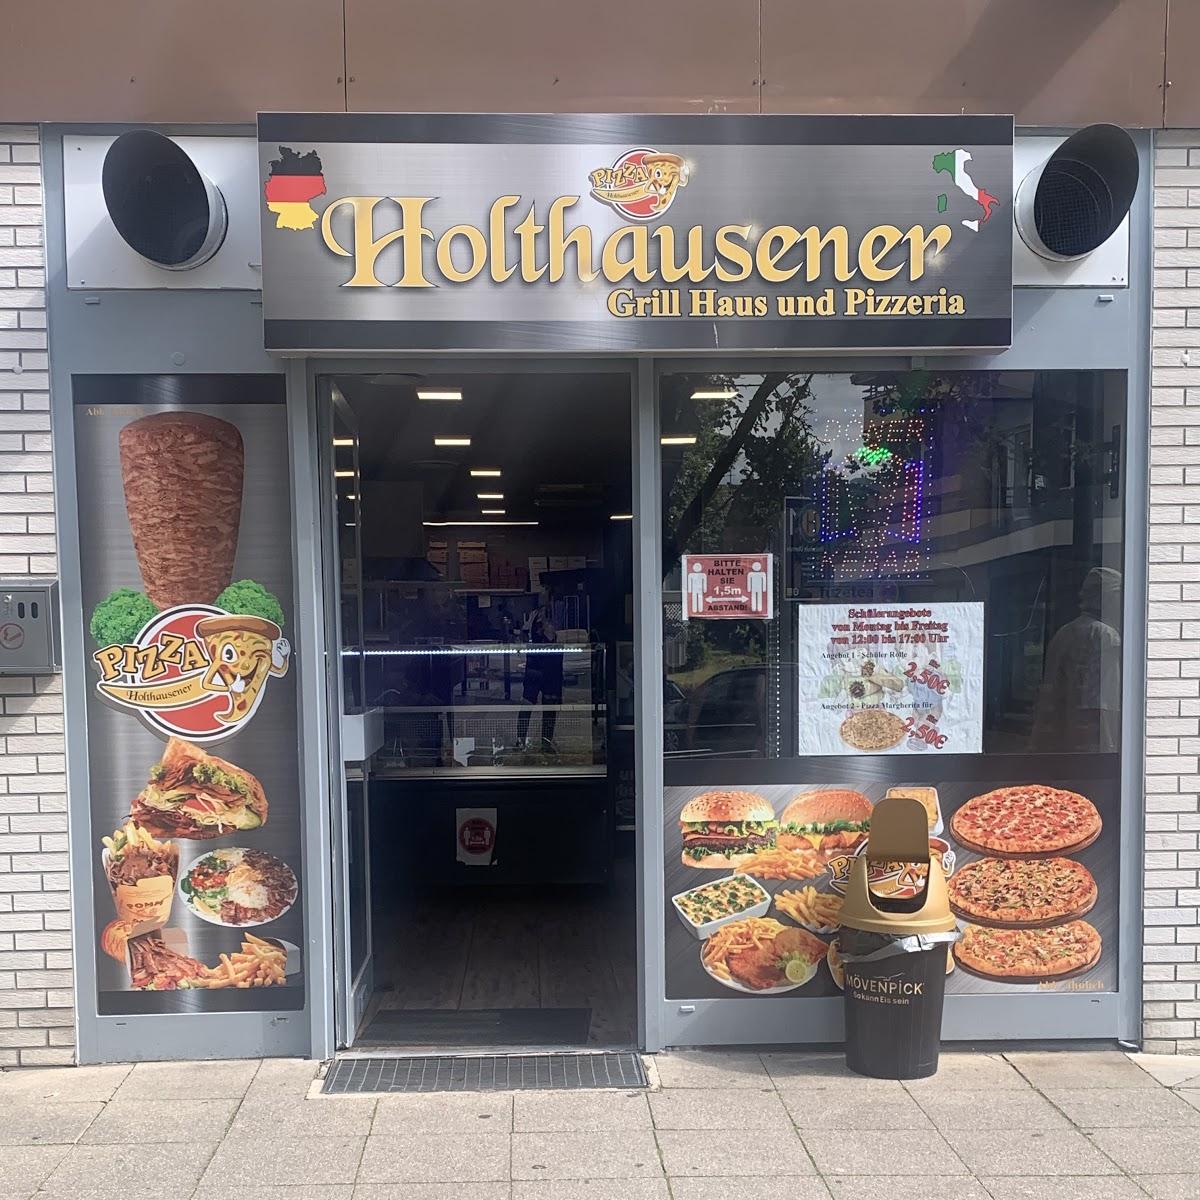 Holthausener Grill Haus und Pizzeria